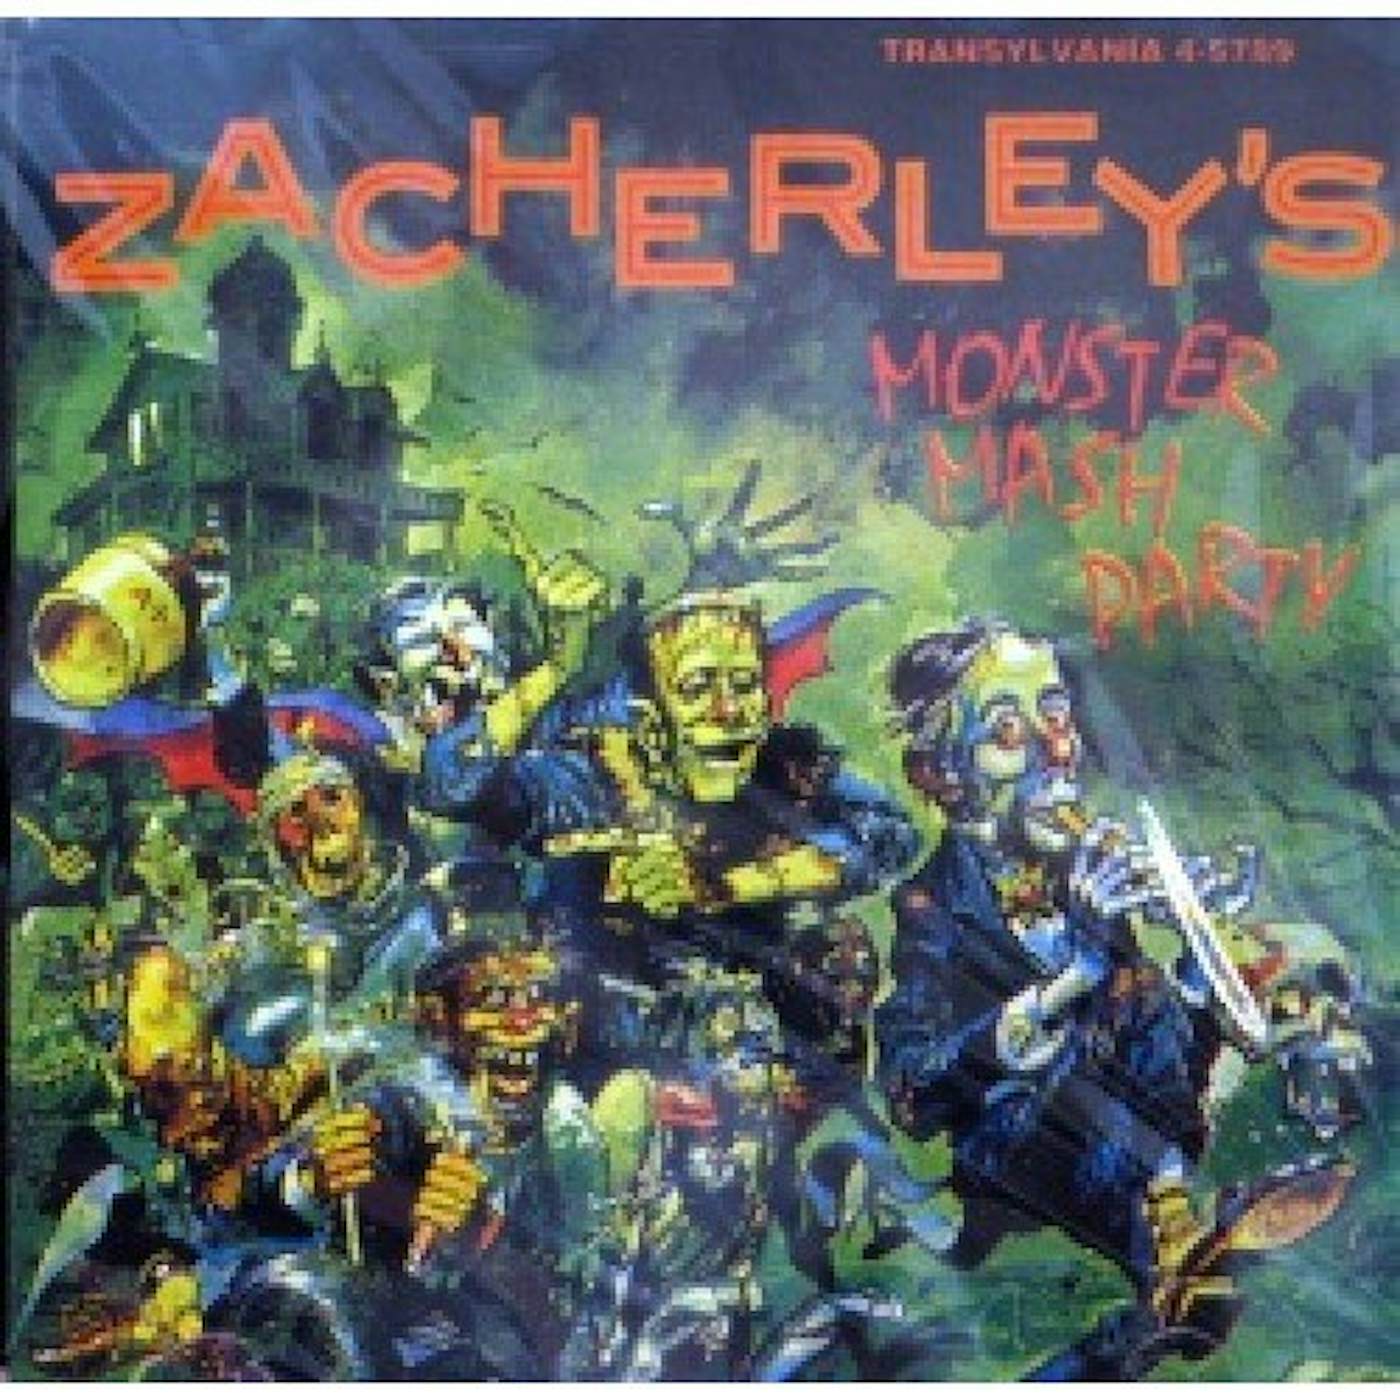 John Zacherle ZACHERLEY'S MONSTER MASH PAR CD